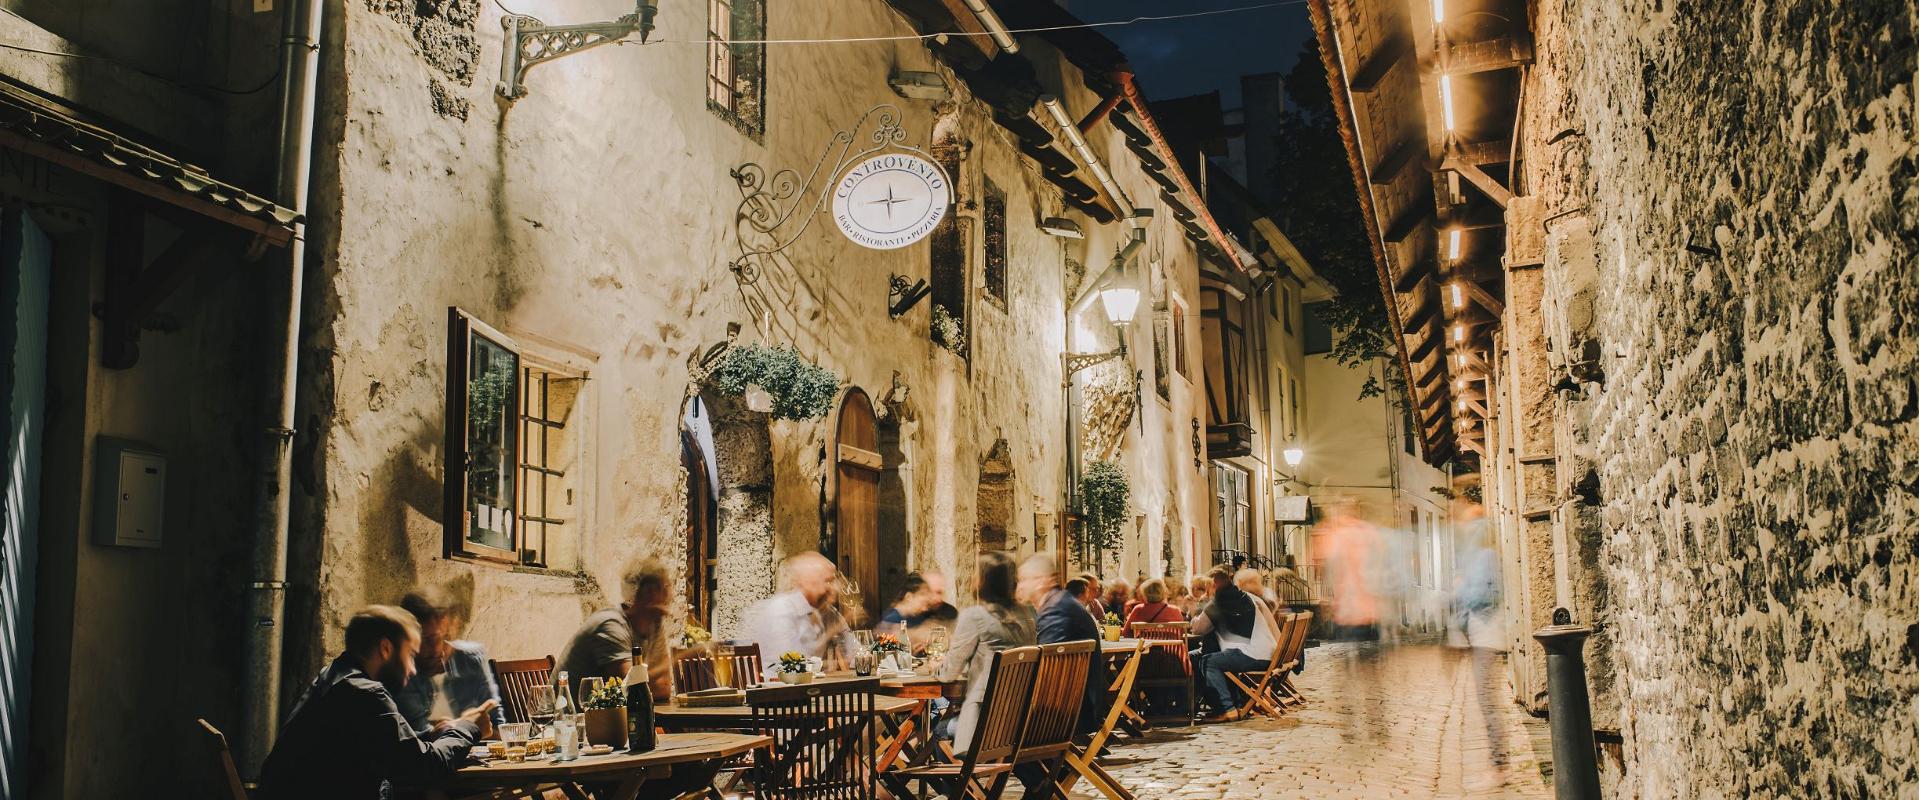 Keskiaikaisen latinalaisen korttelin sydämessä, Katariina käikin käsityömestarien työpajojen välissä sijaitsee Tallinnan vanhin italialainen ravintola